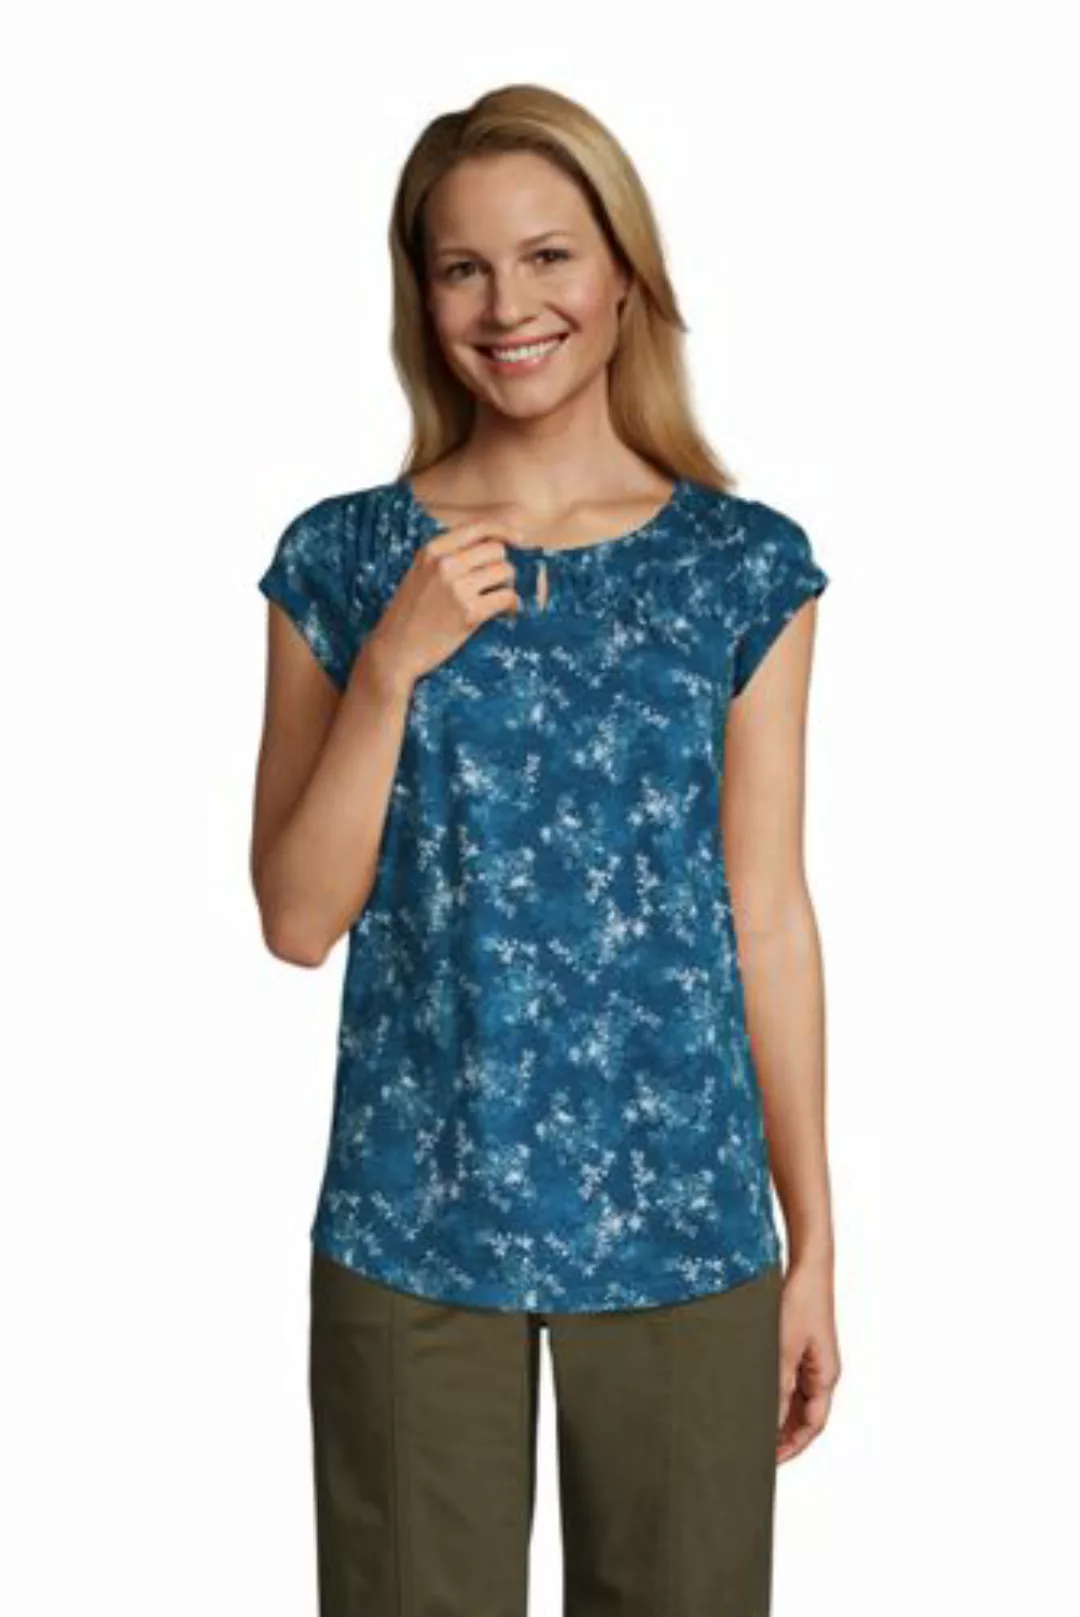 Shirt mit Biesen in Petite-Größe, Damen, Größe: XS Petite, Blau, Polyacryl, günstig online kaufen